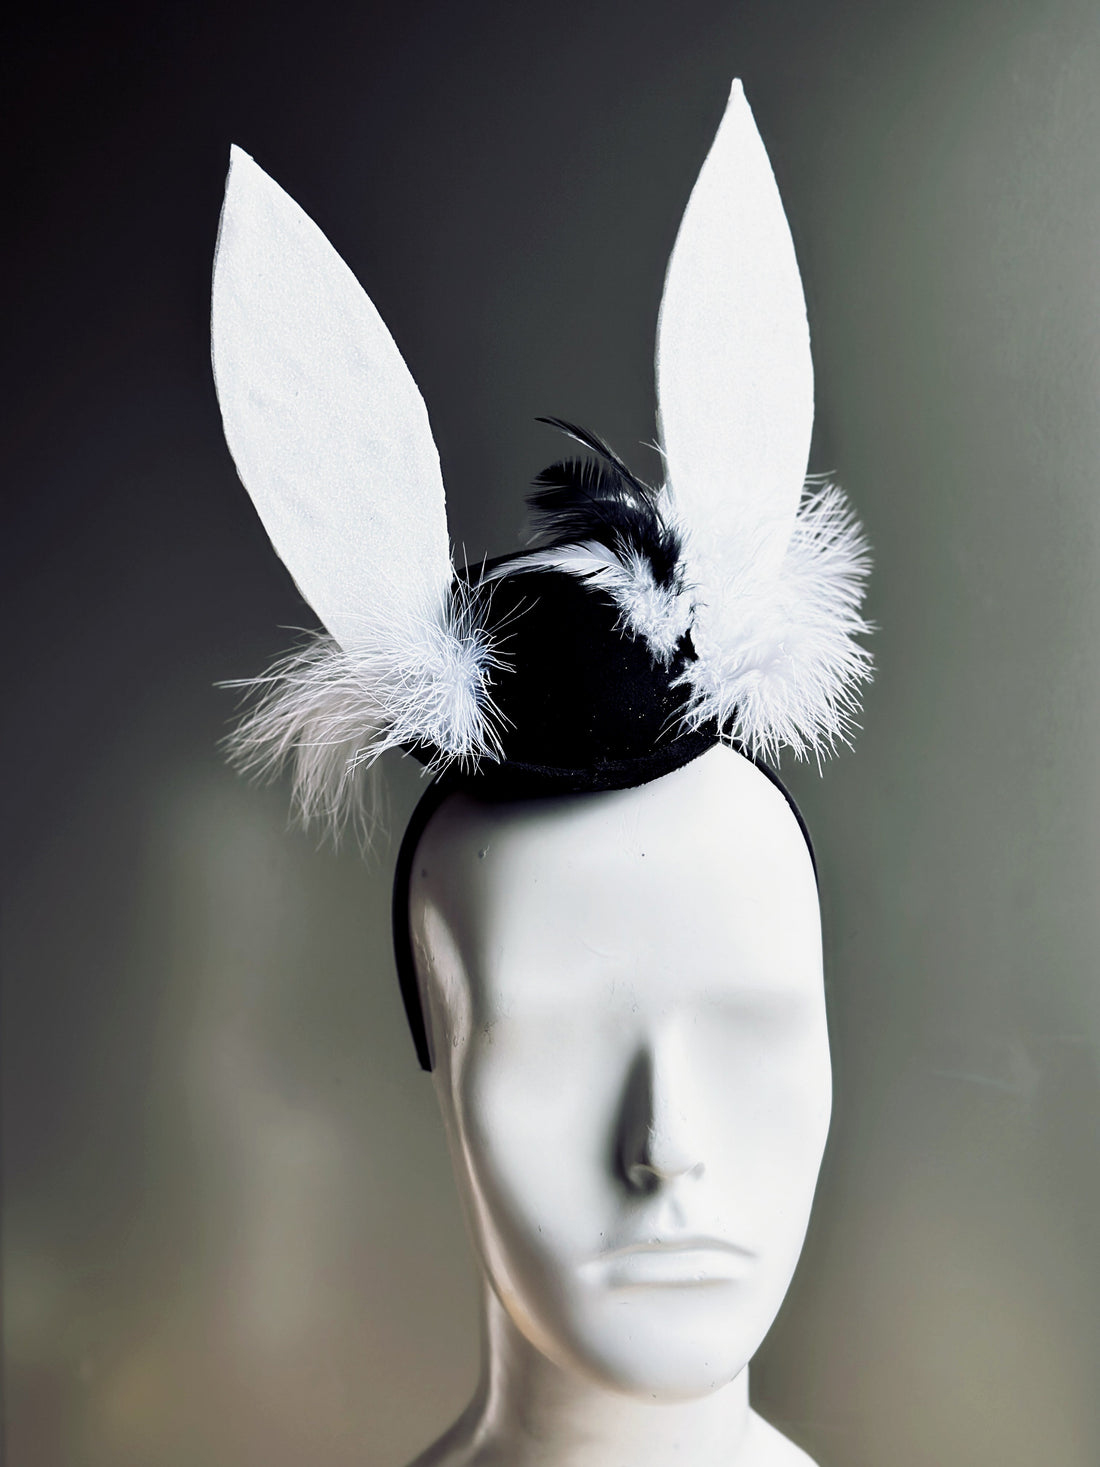 White Rabbit Hat